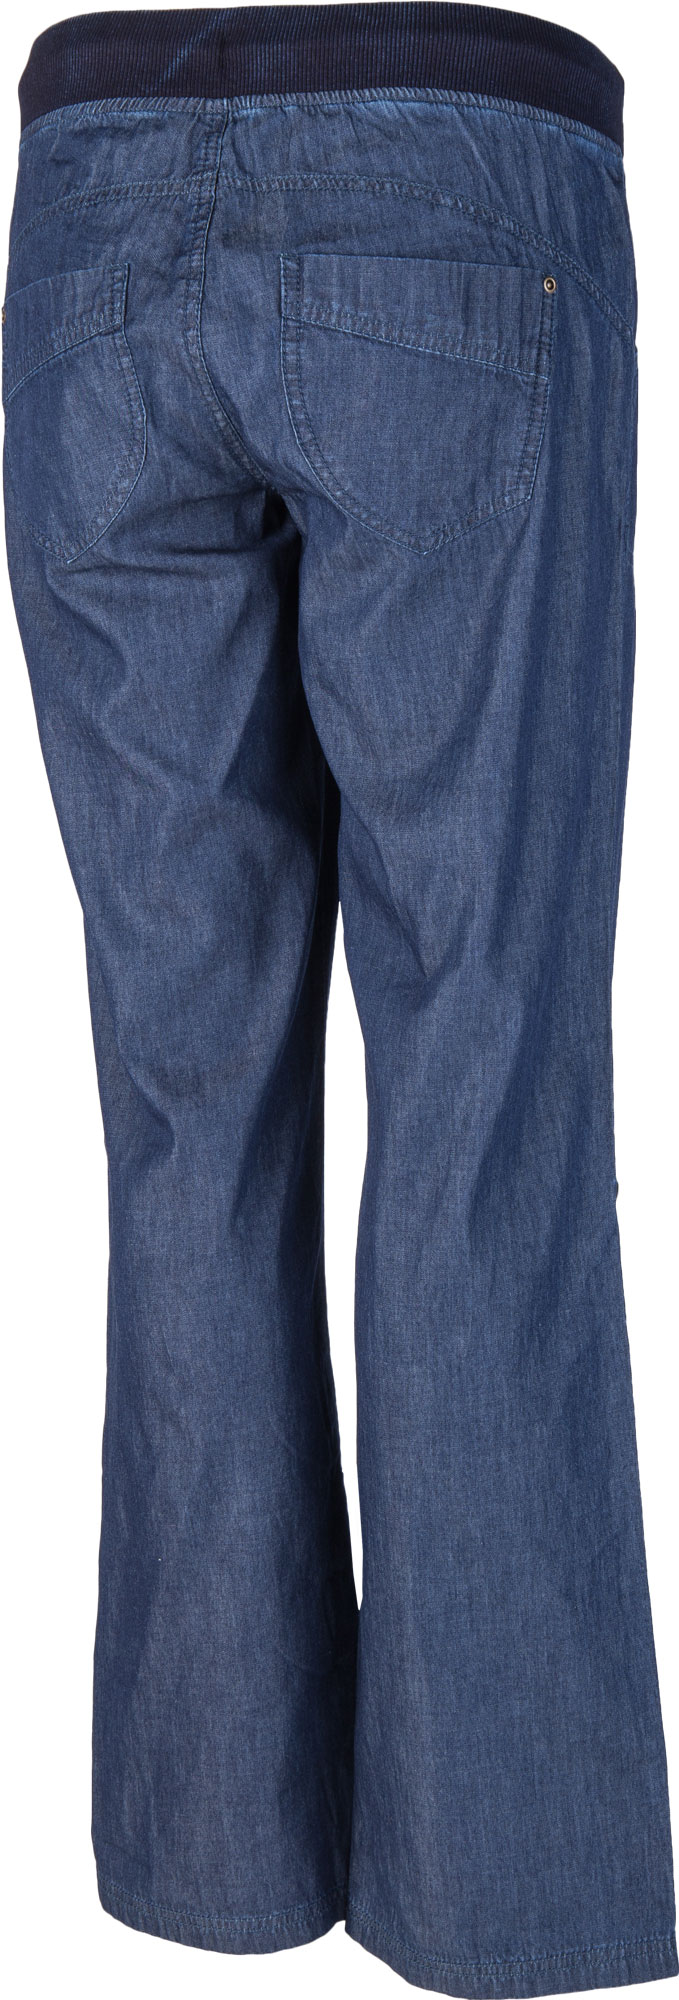 Dámské kalhoty džínového vzhledu